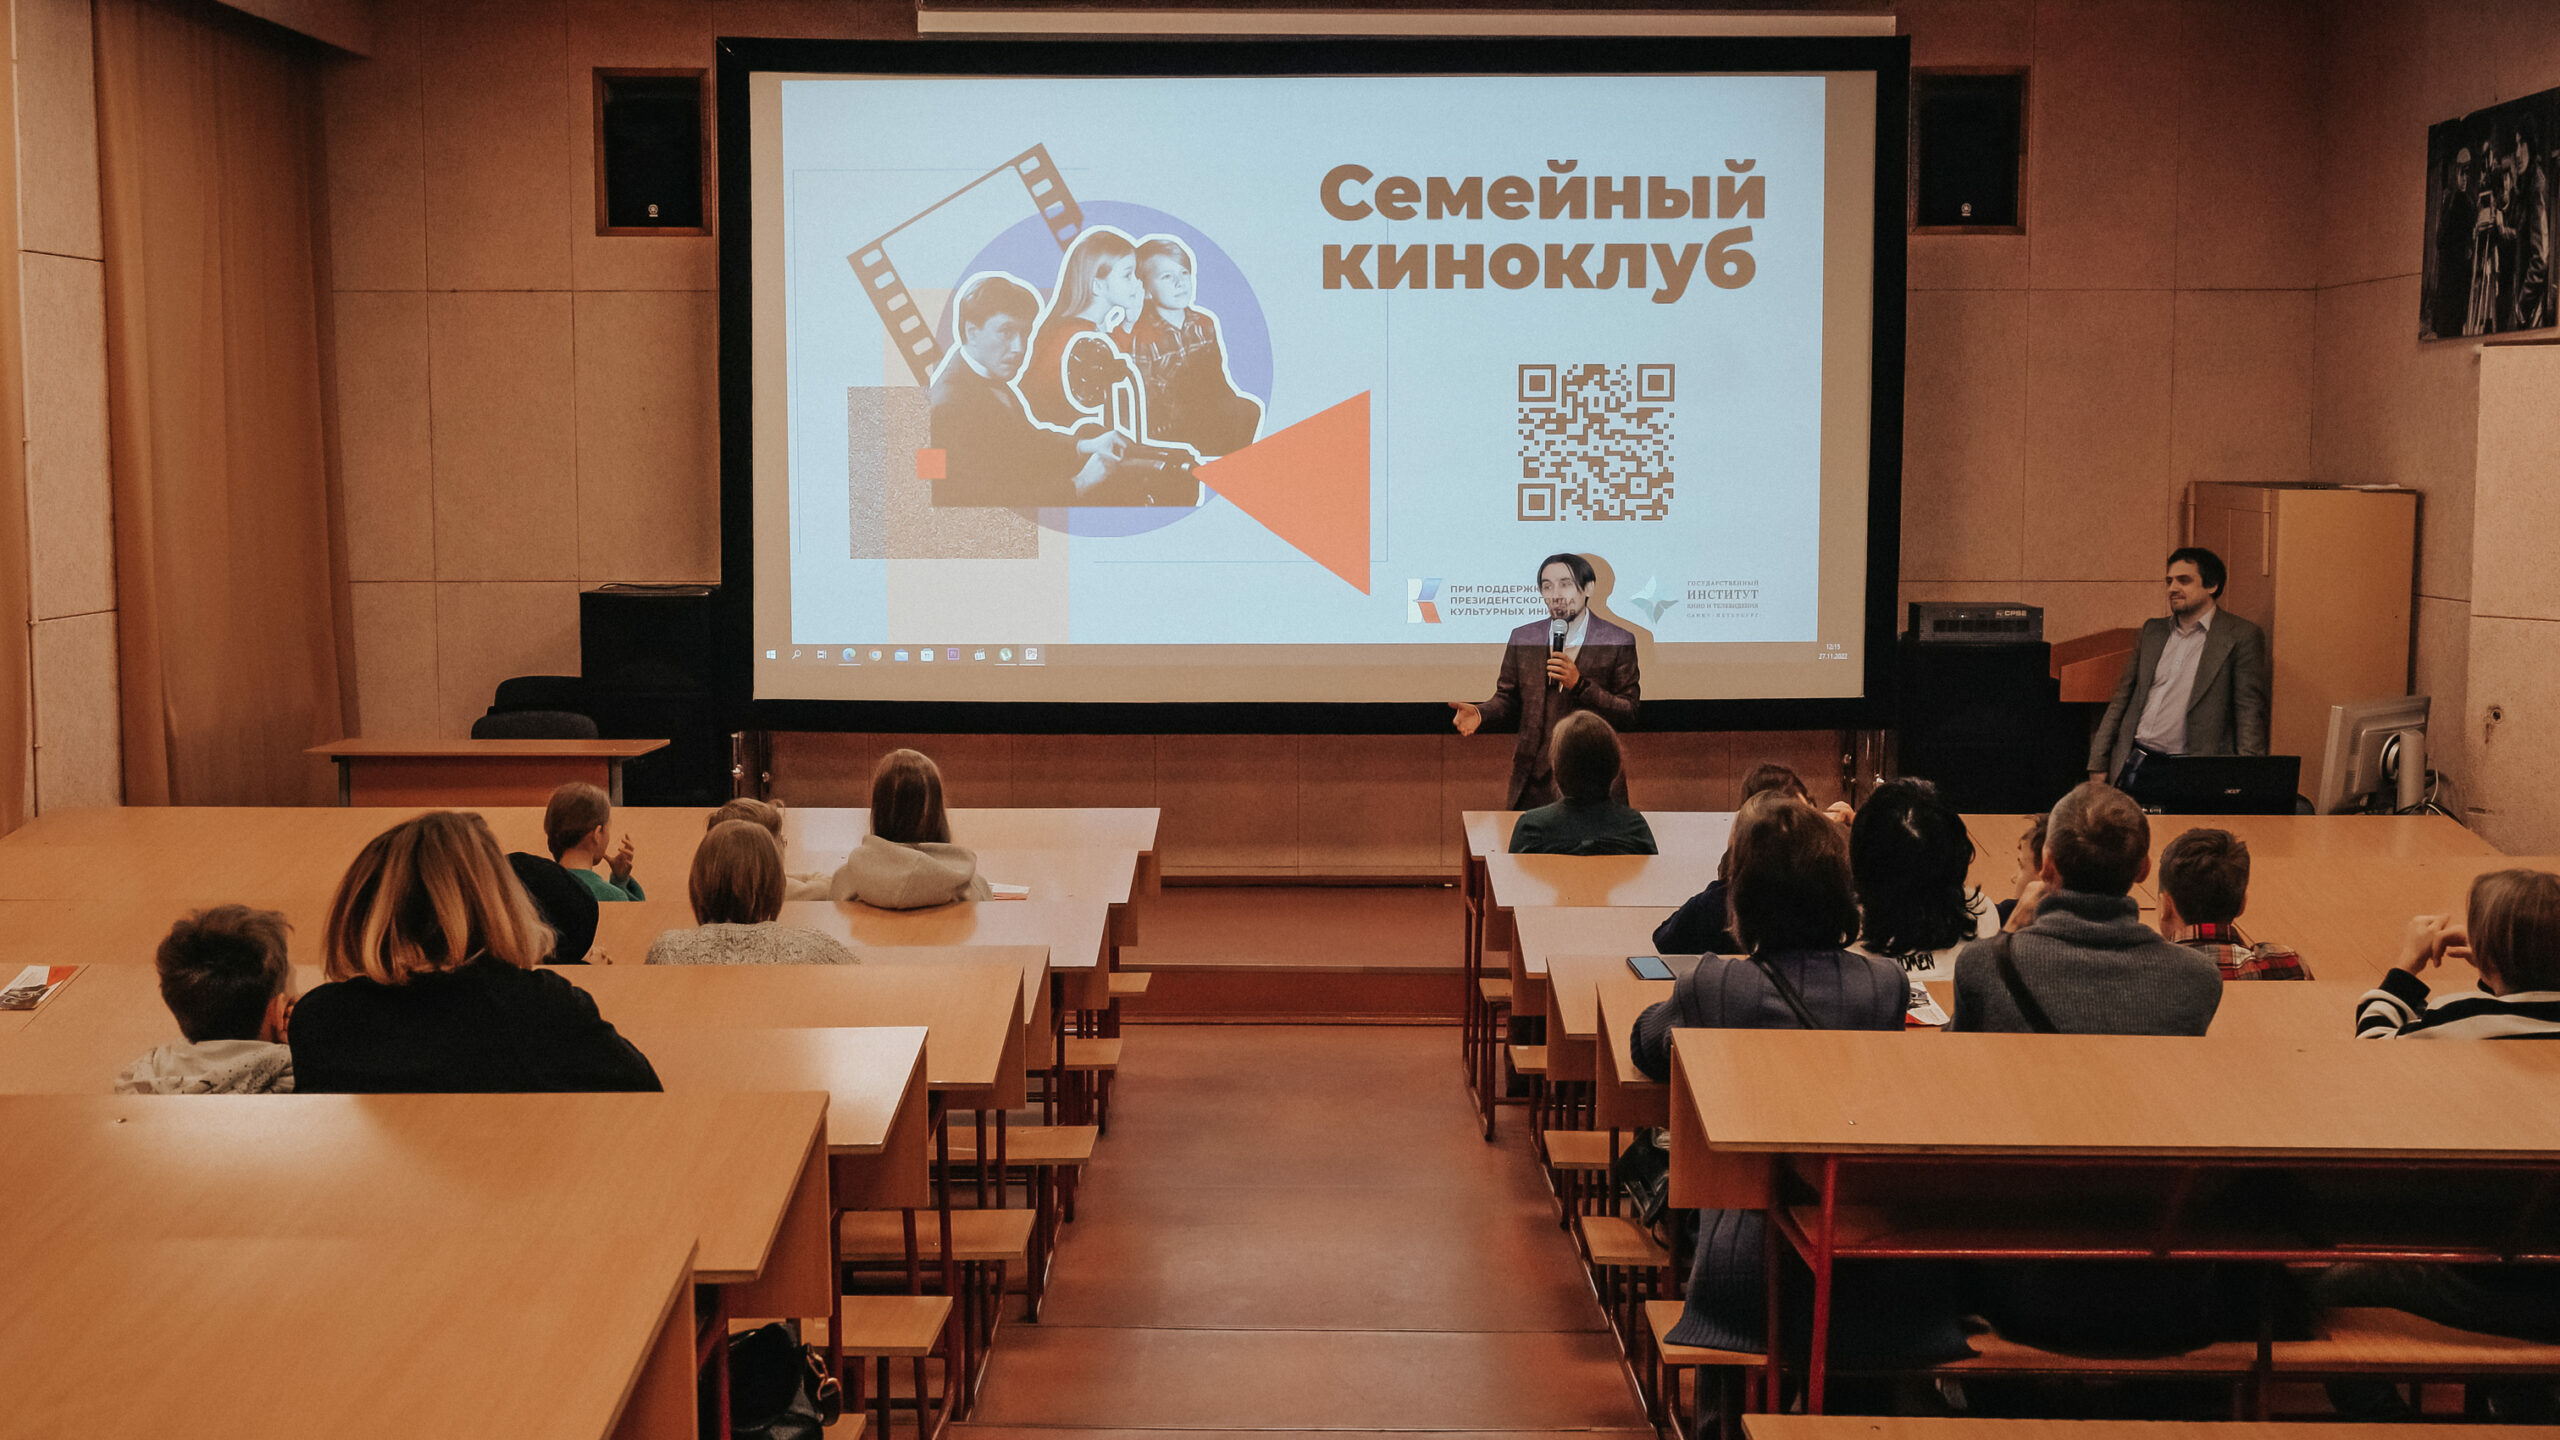 «Семейный киноклуб» представит показ советских фильмов для школьников